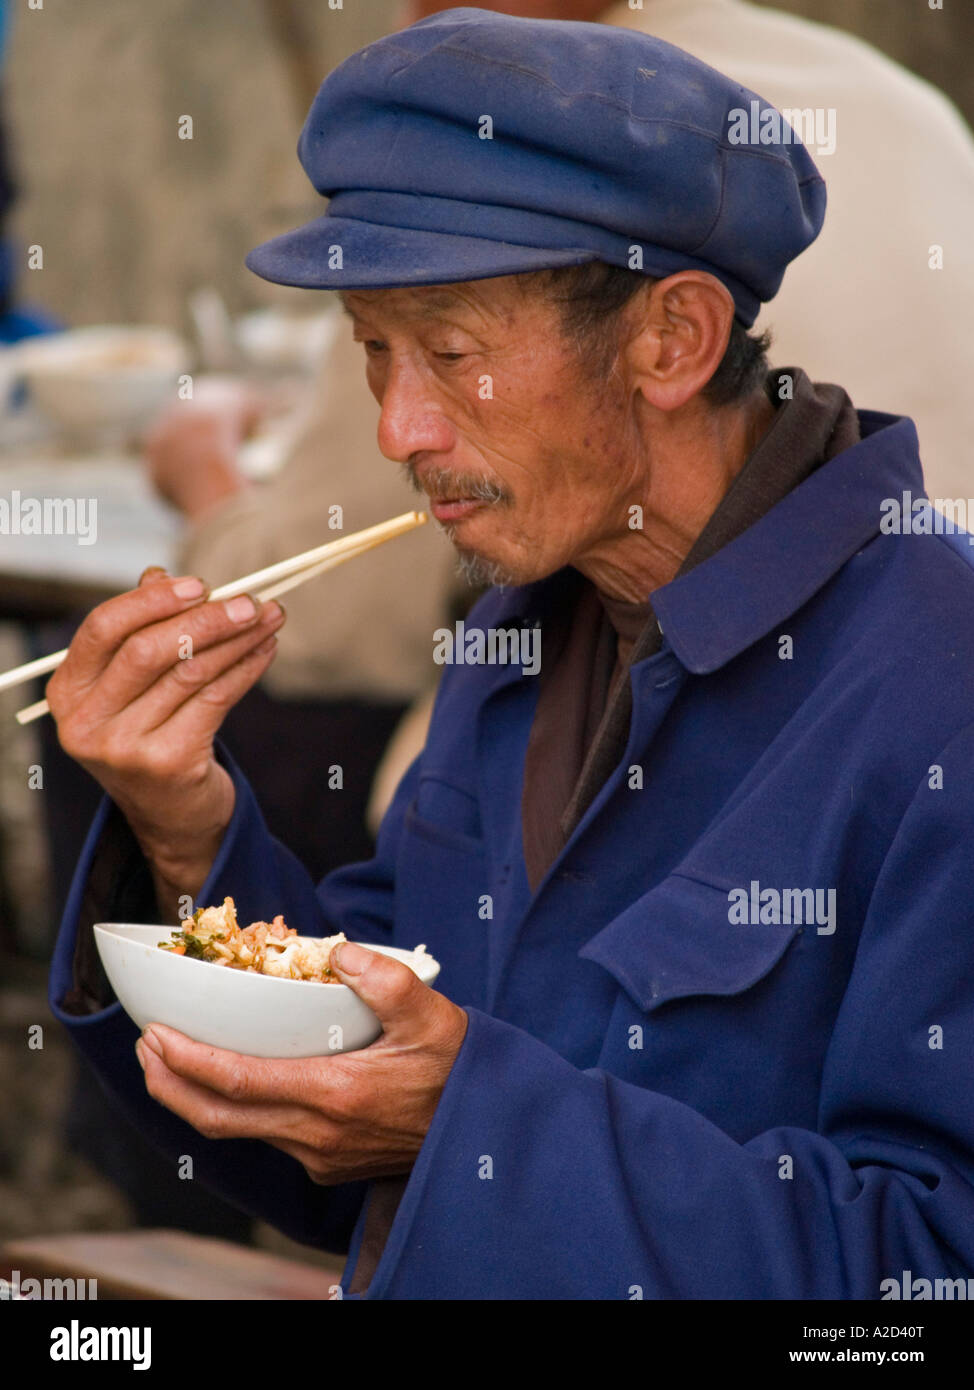 Vieil homme en costume mao Chine Dali eating noodles Banque D'Images